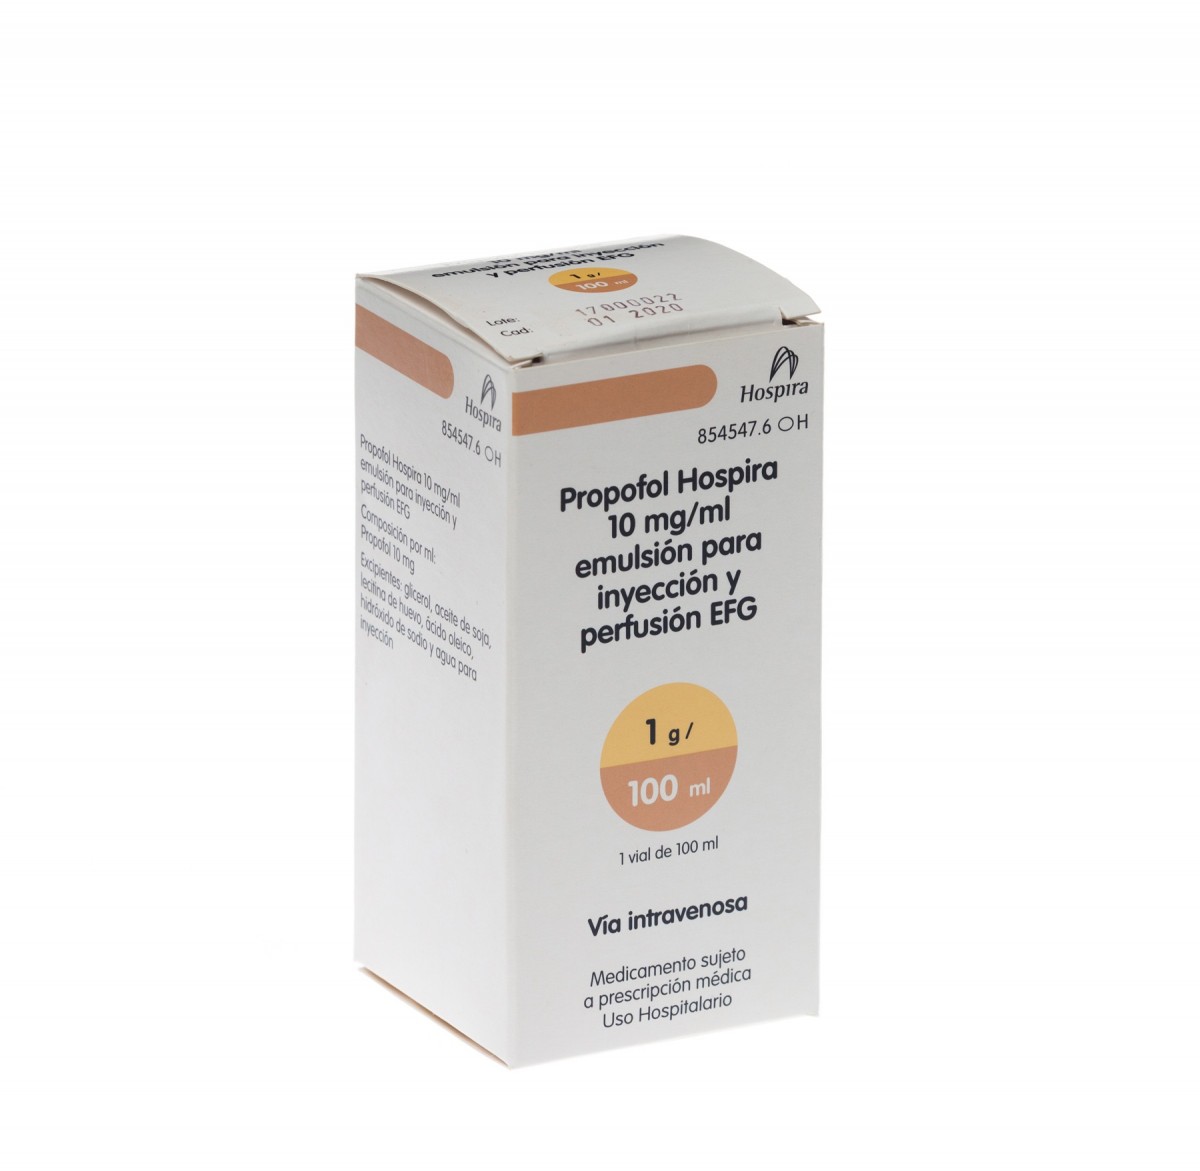 PROPOFOL HOSPIRA 10 mg/ml EMULSION PARA INYECCION Y PERFUSION EFG, 5 viales de 20 ml fotografía del envase.